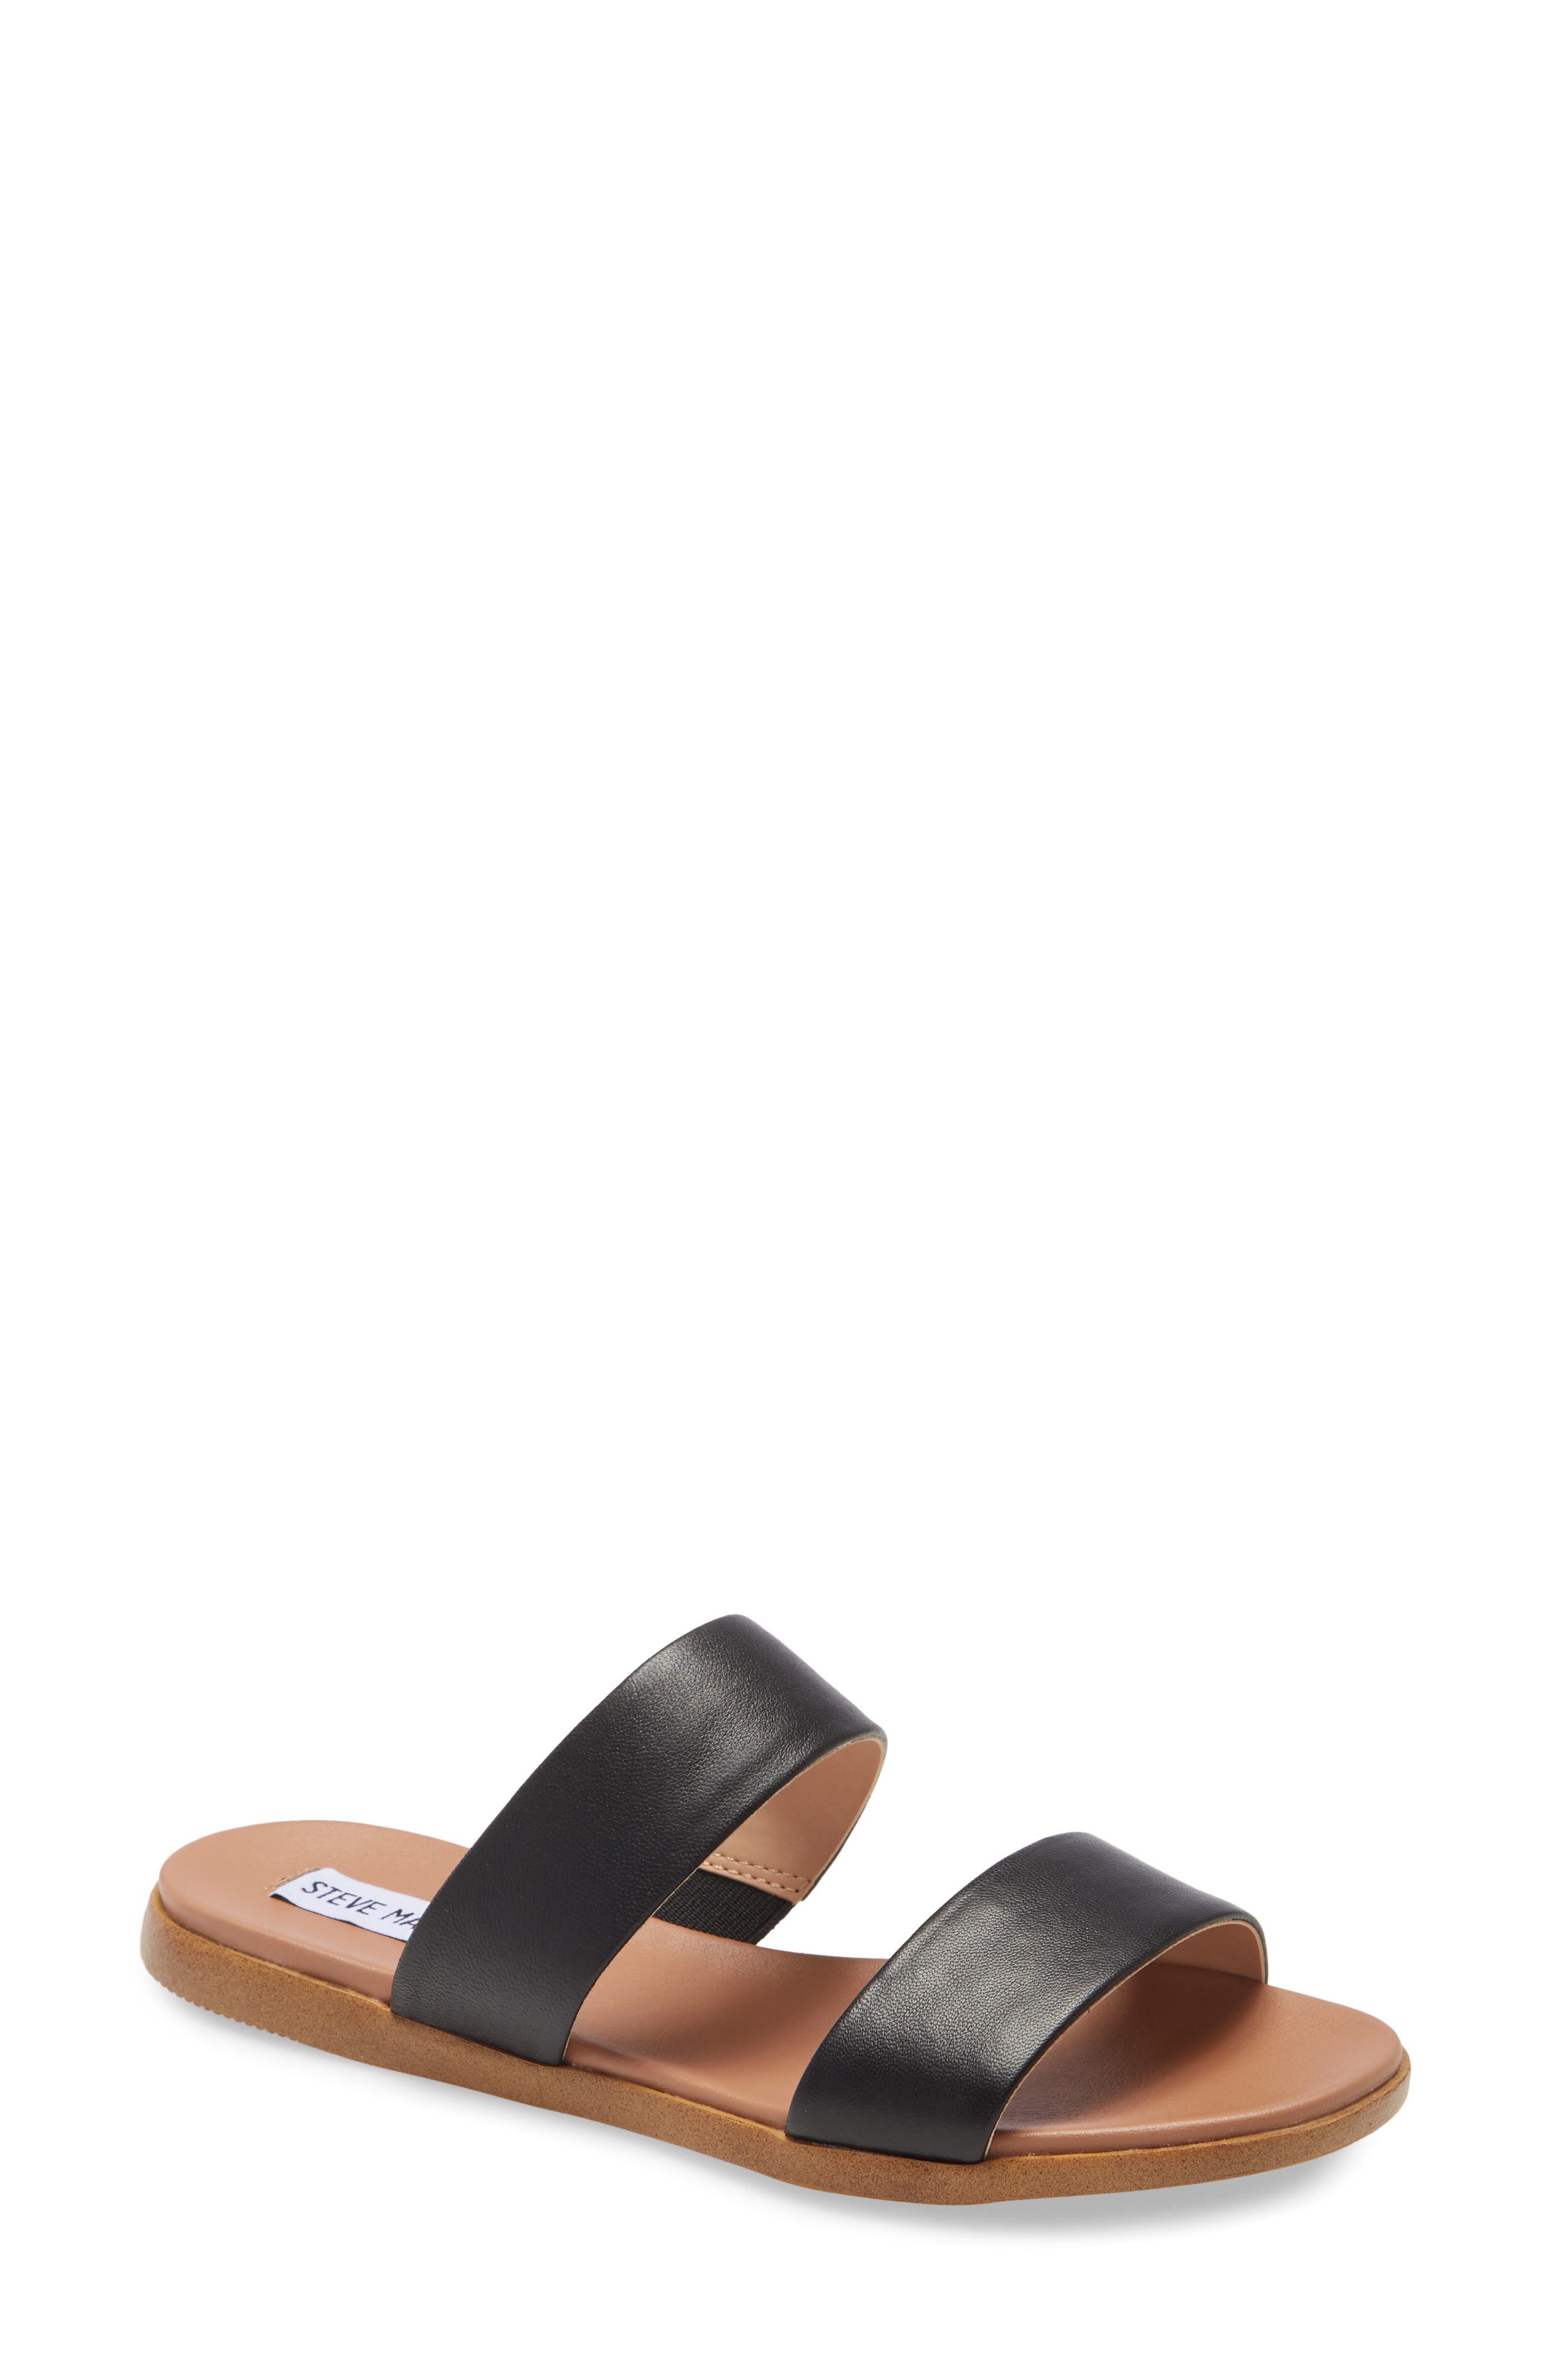 nordstrom slide sandals